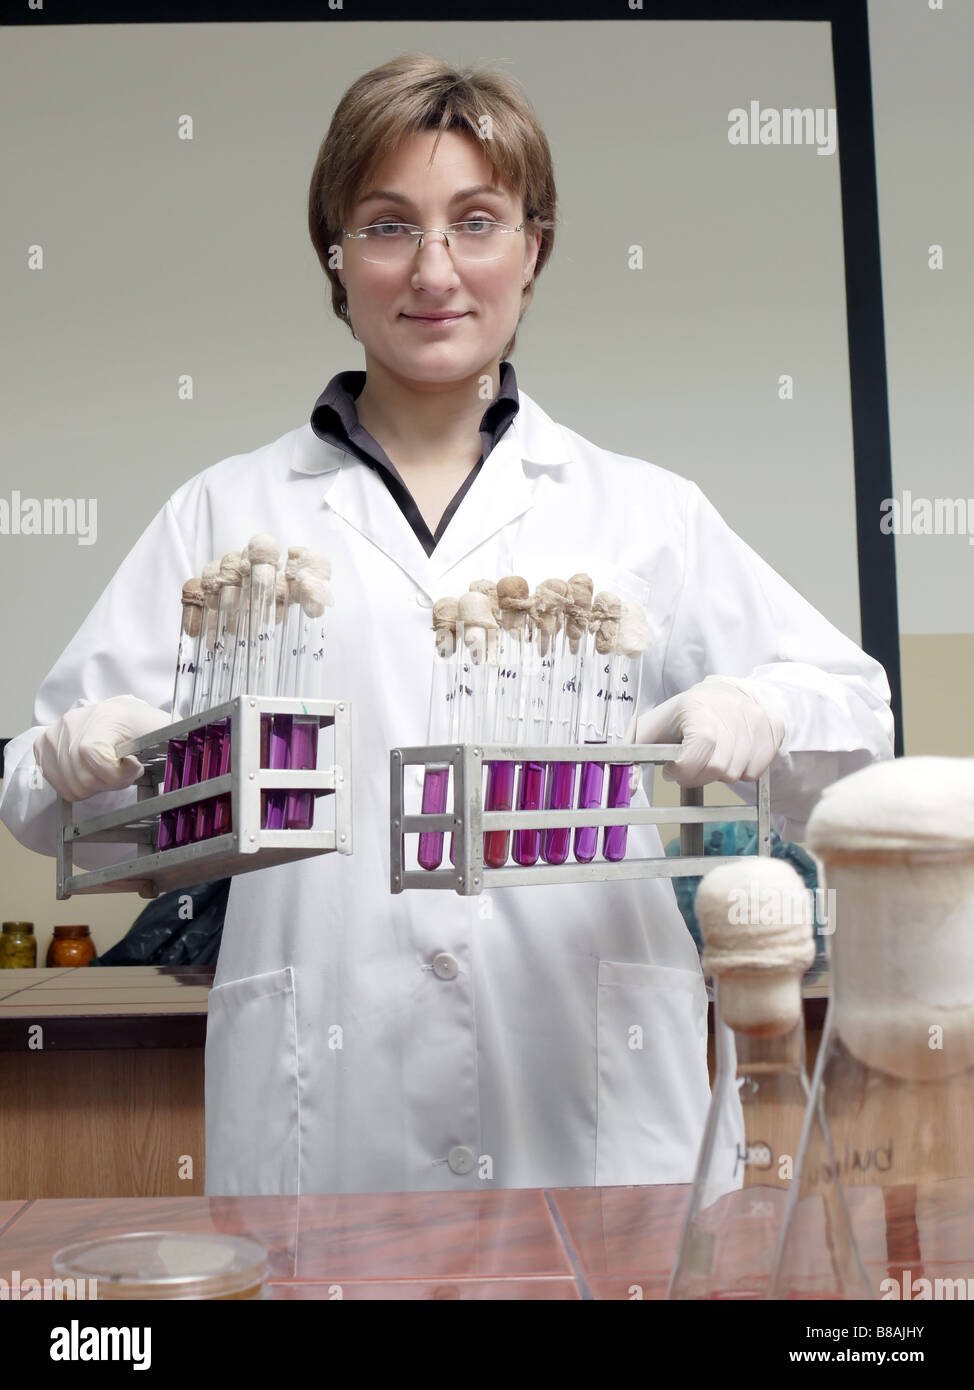 Portrait de femme technicienne de laboratoire holding racks avec tubes à essai Banque D'Images